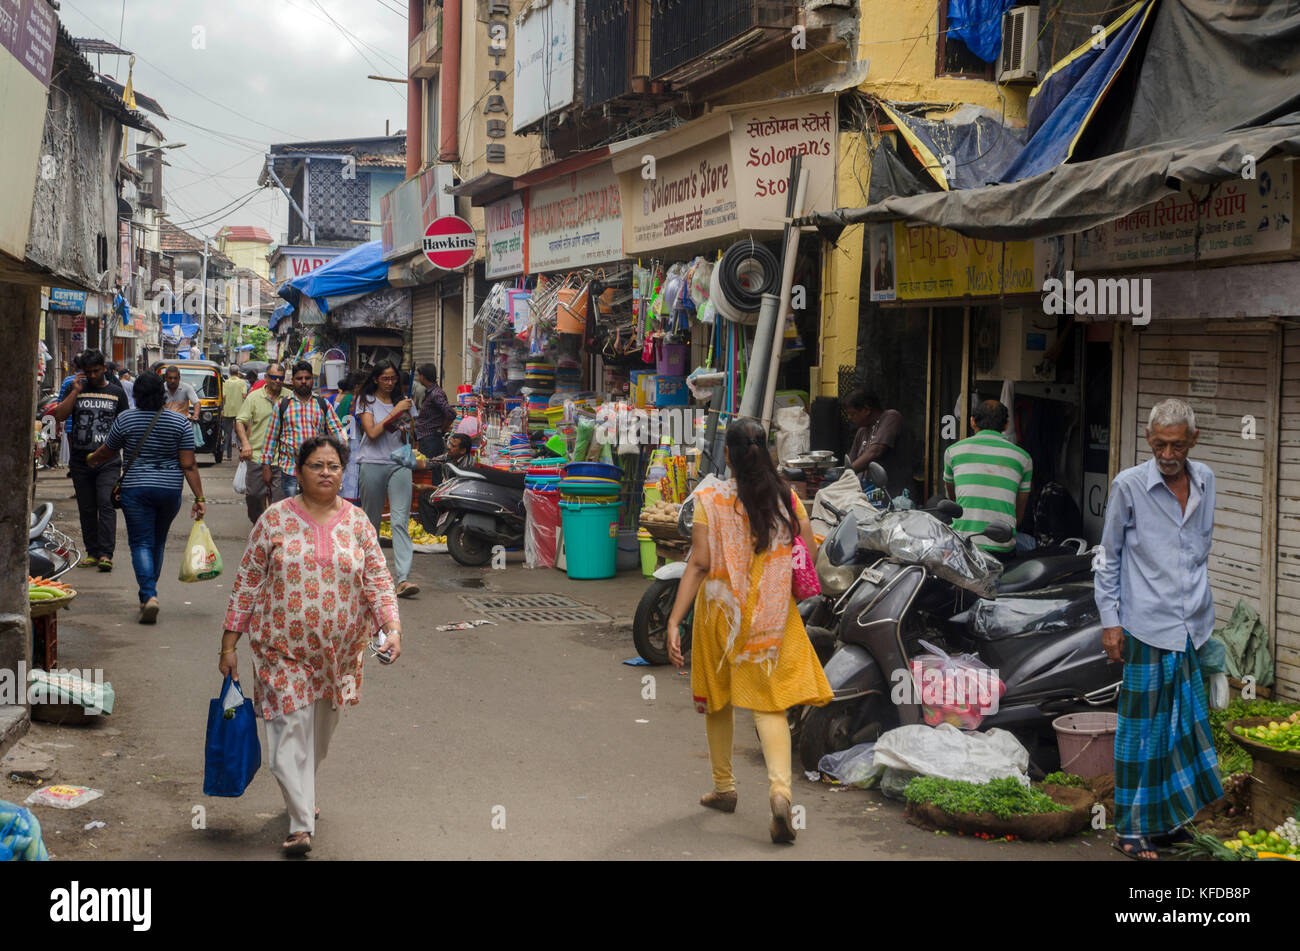 Busy street scene in Bandra, Mumbai, India Stock Photo